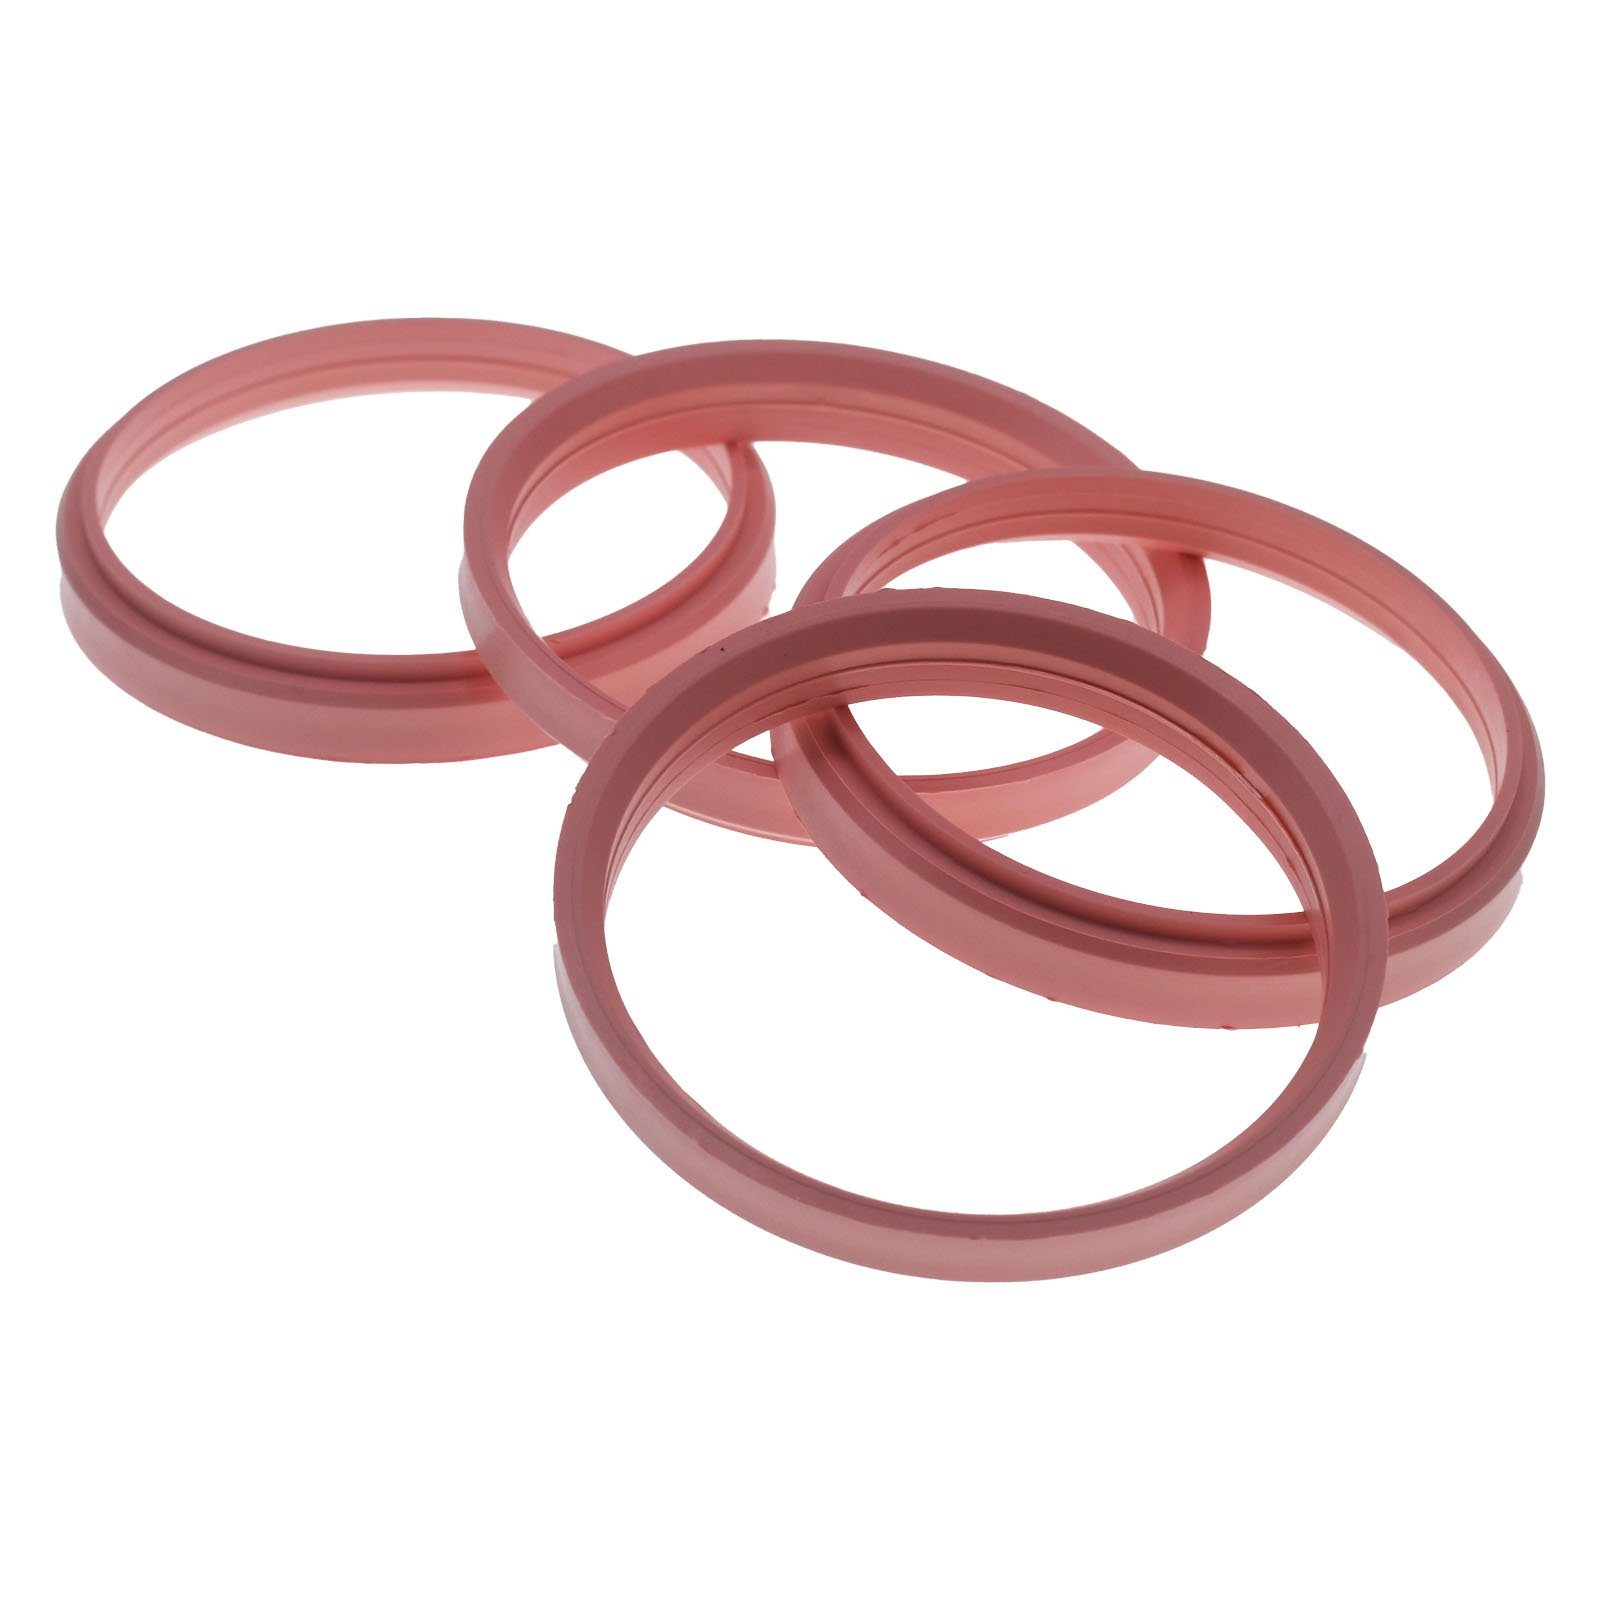 RKC Reifenstift 4x Zentrierringe Rosa Felgen Ringe Made in Germany, Maße: 76,0 x 66,5 mm